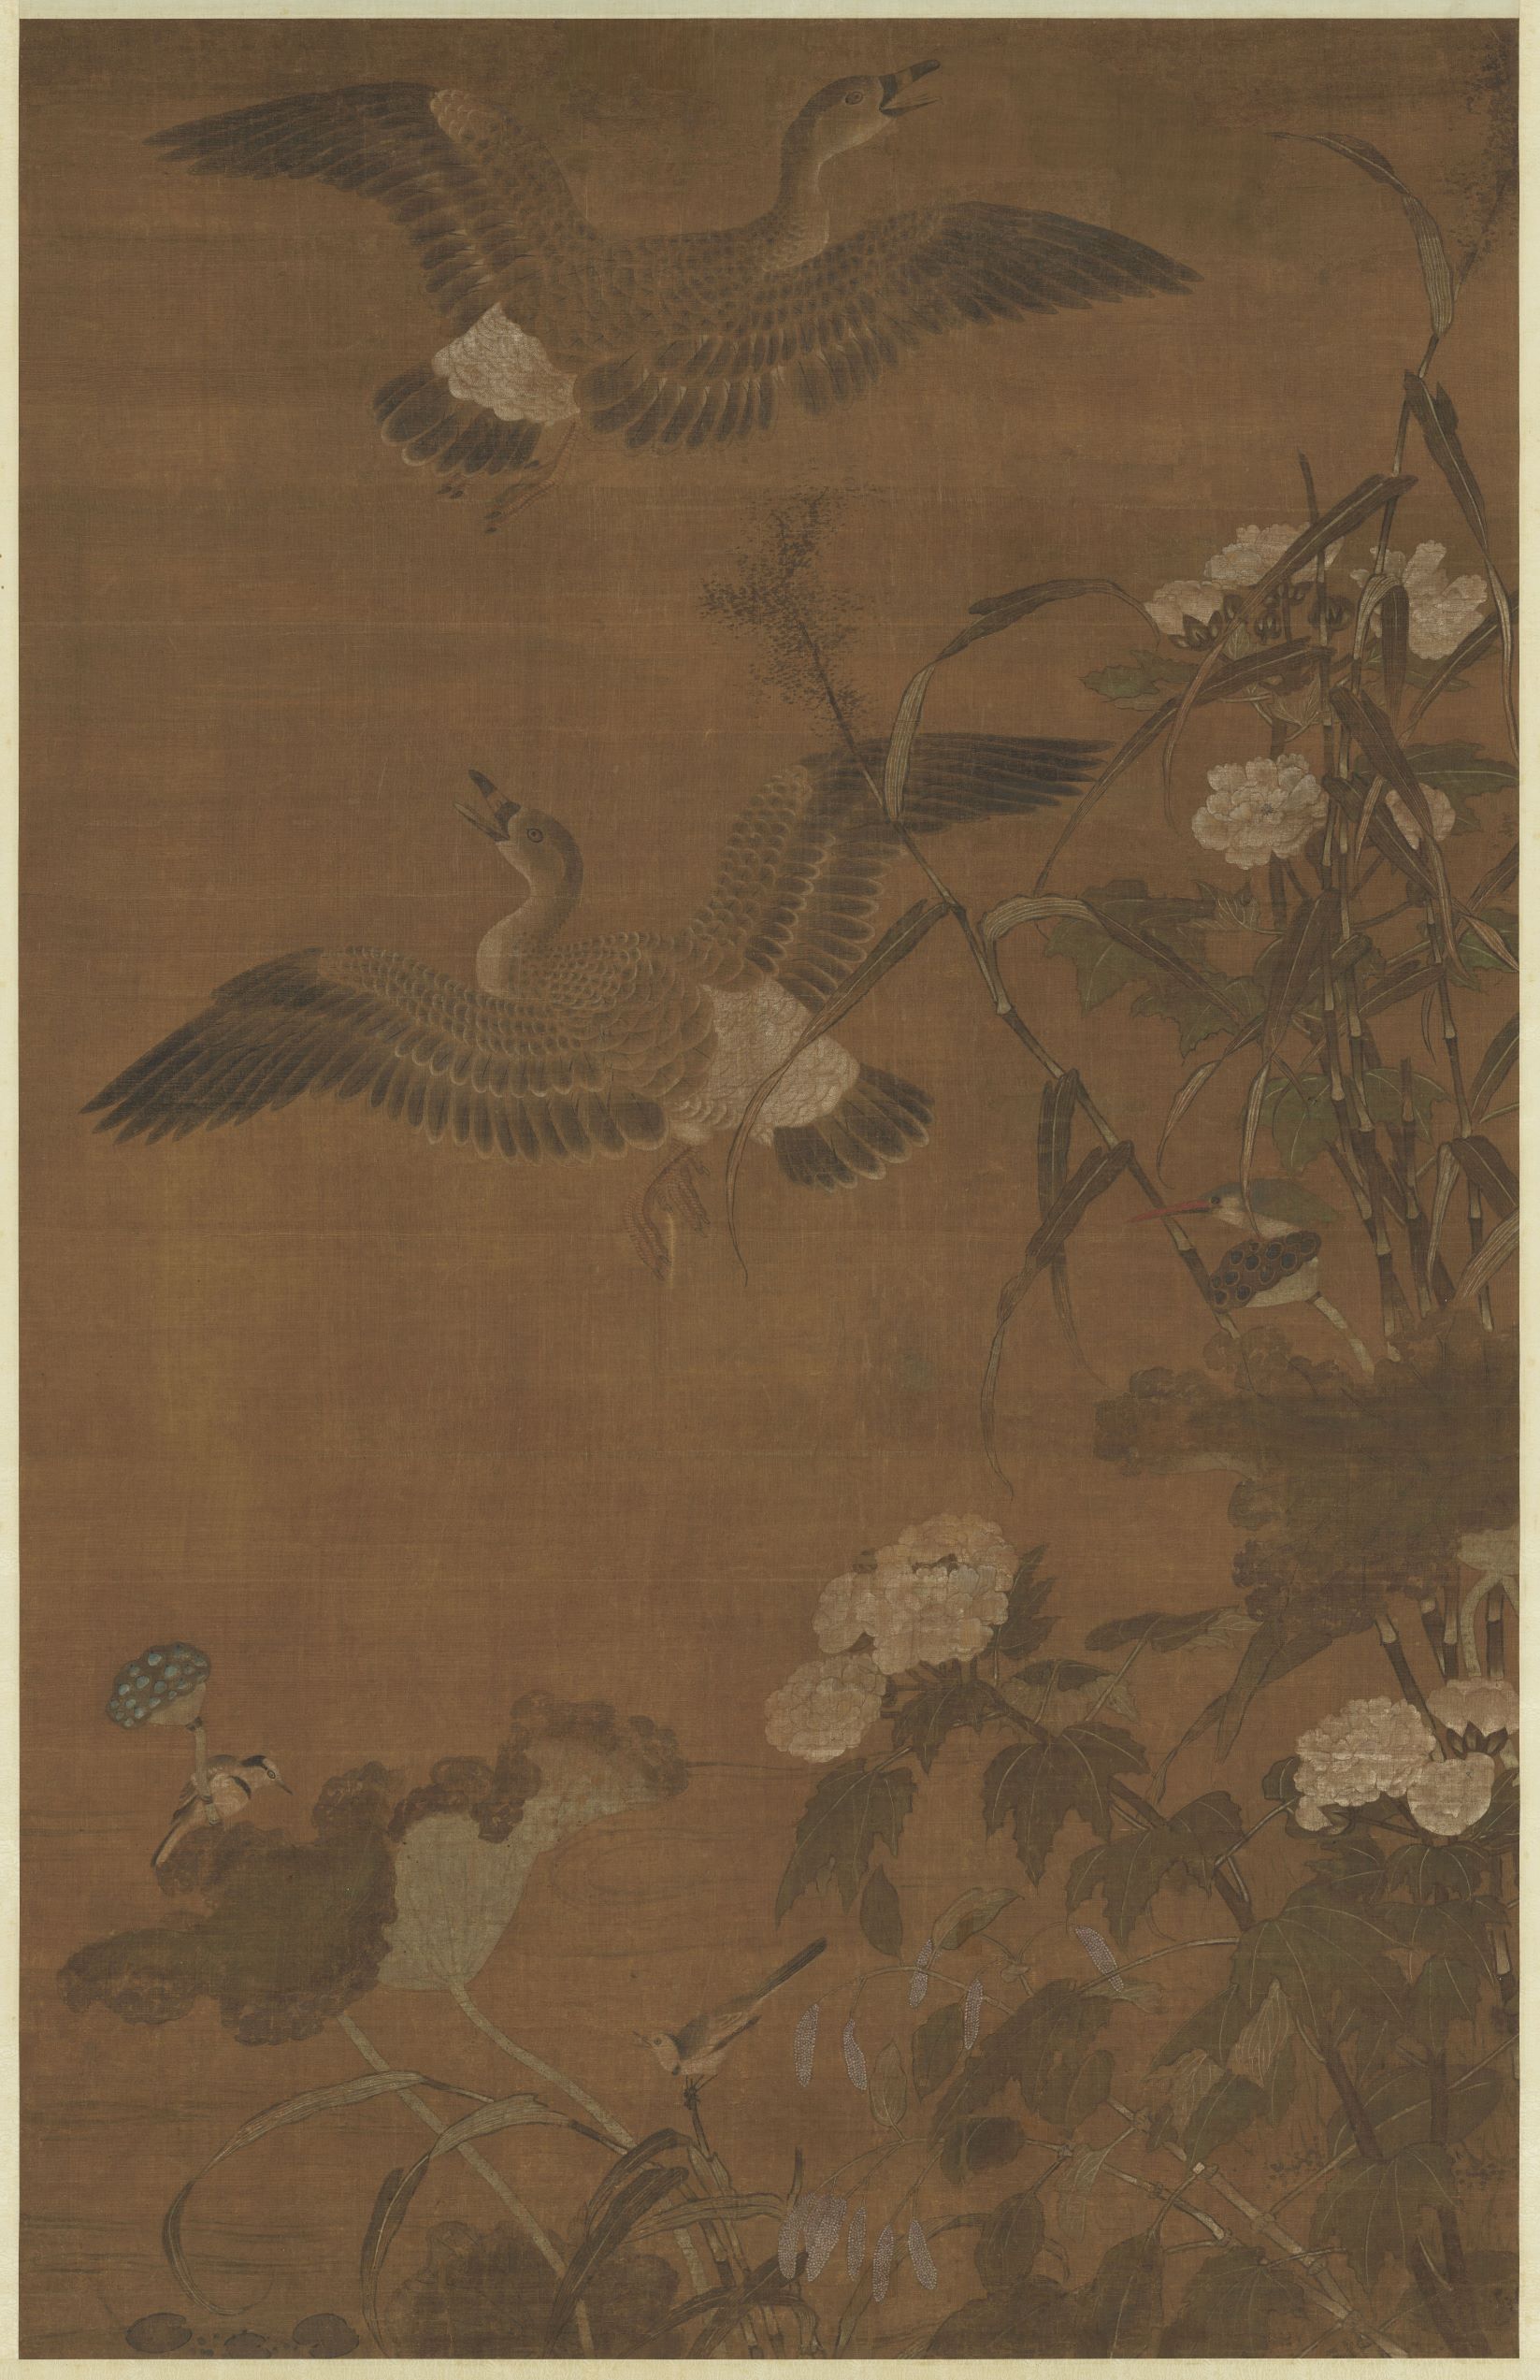 China Chinese Swan Animals 1647x2545